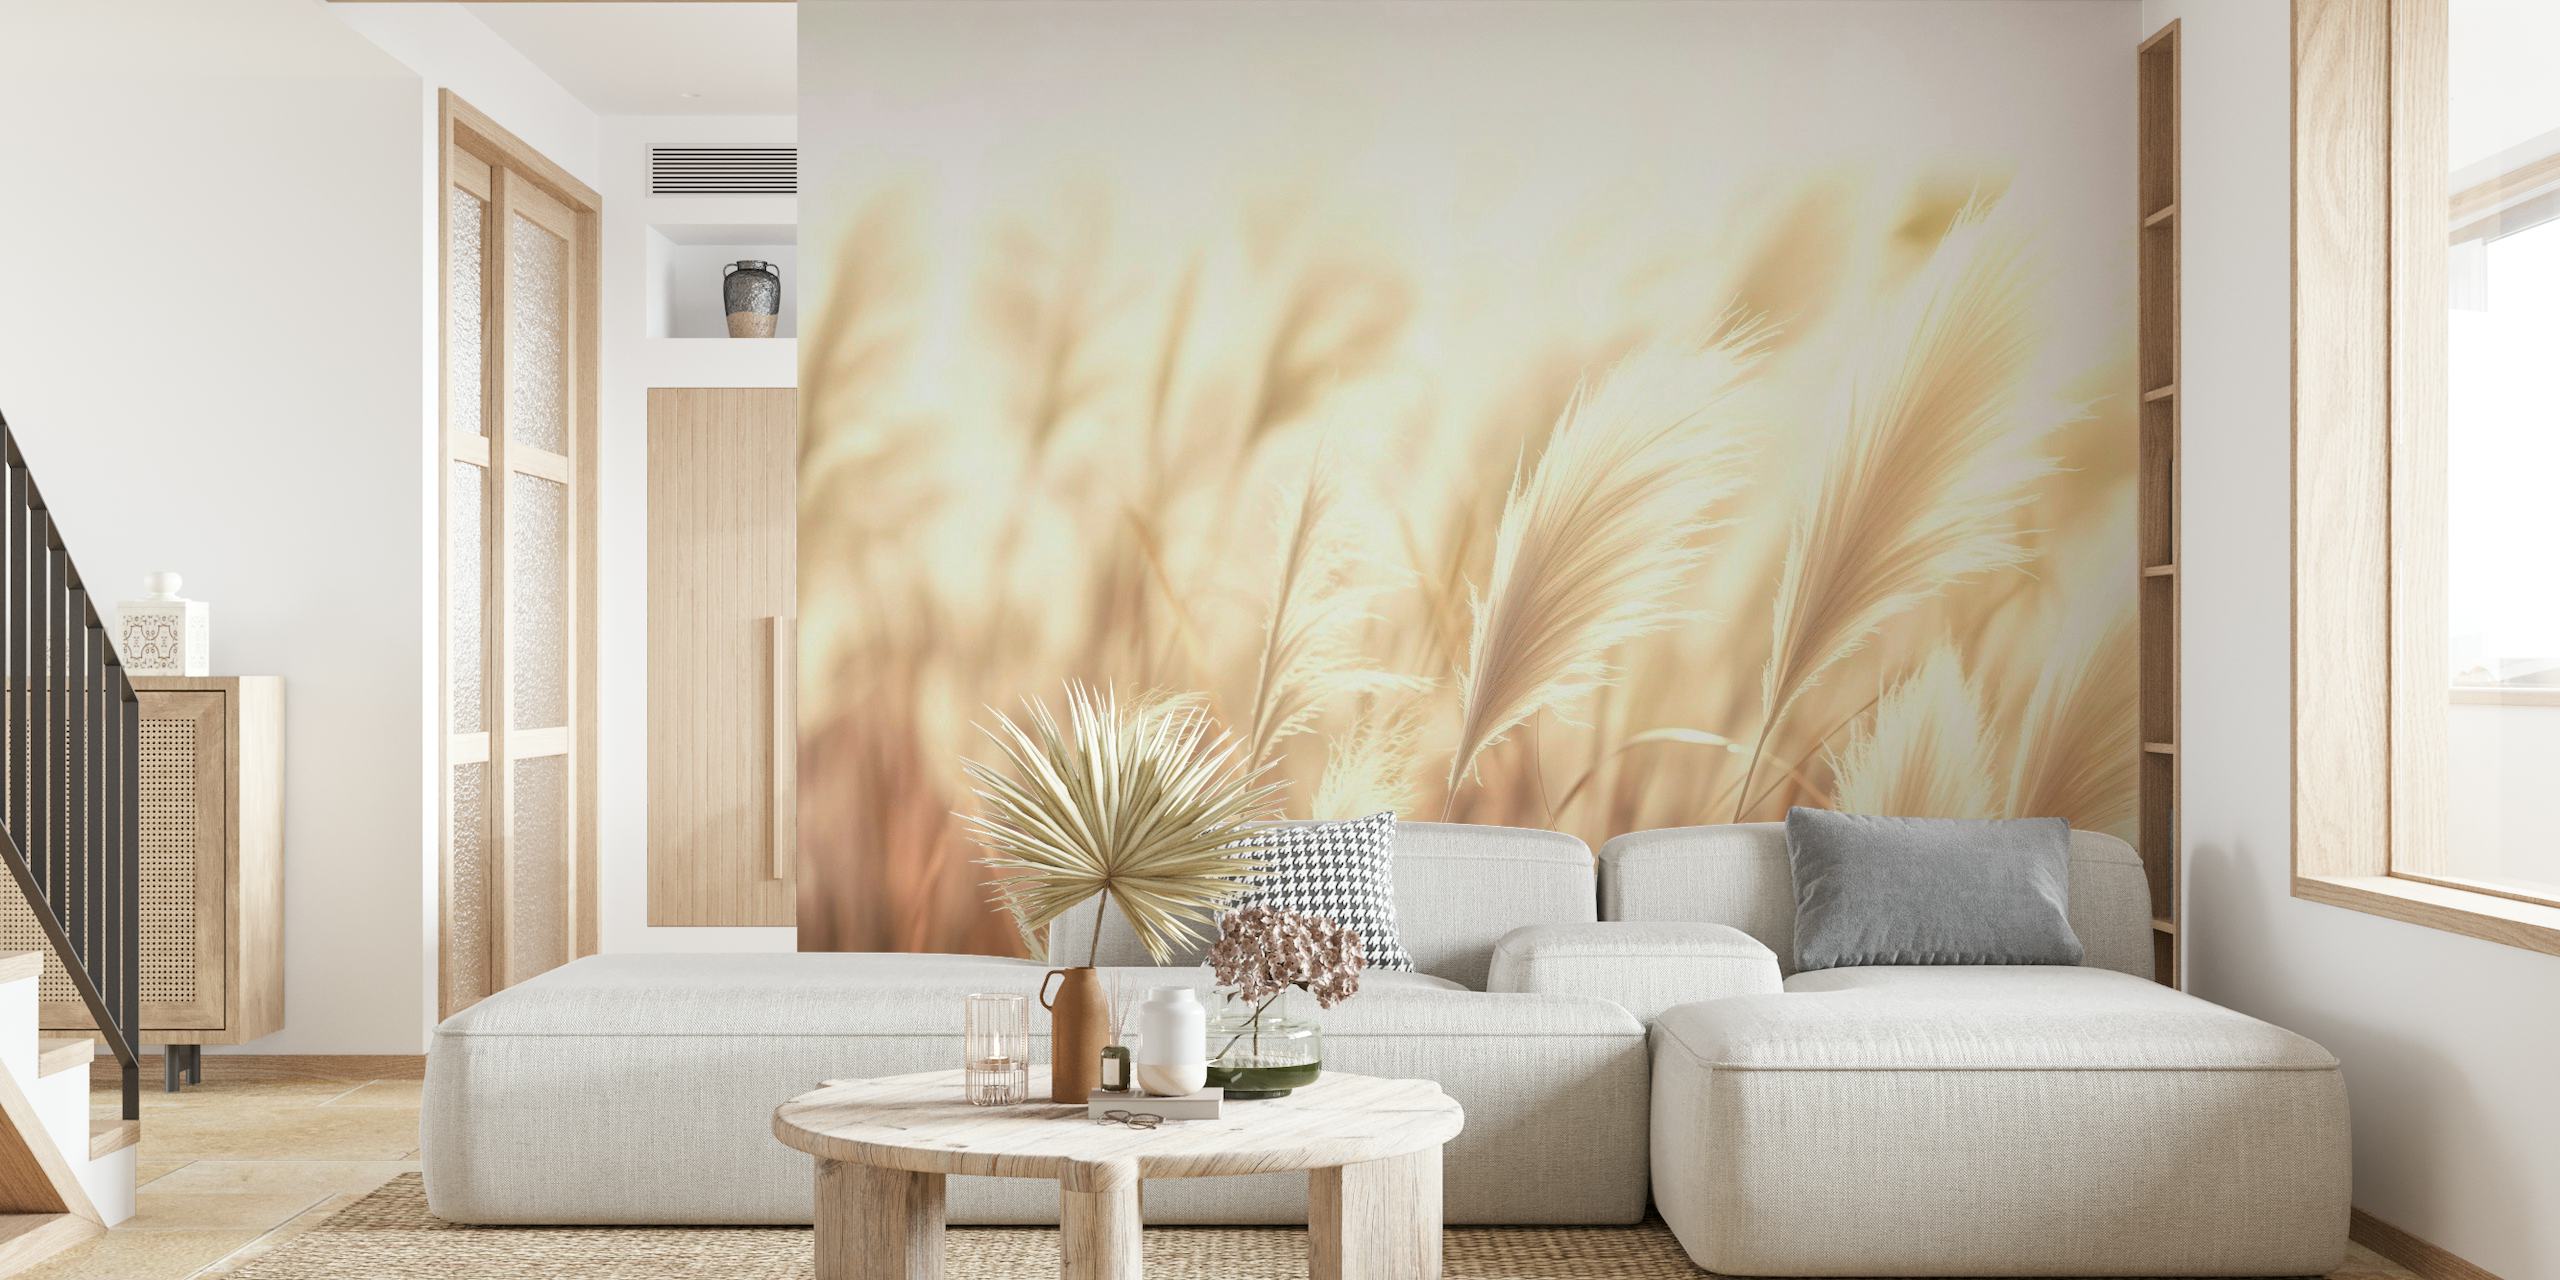 Mural de parede Serenity Swirls retratando redemoinhos suaves em tons quentes